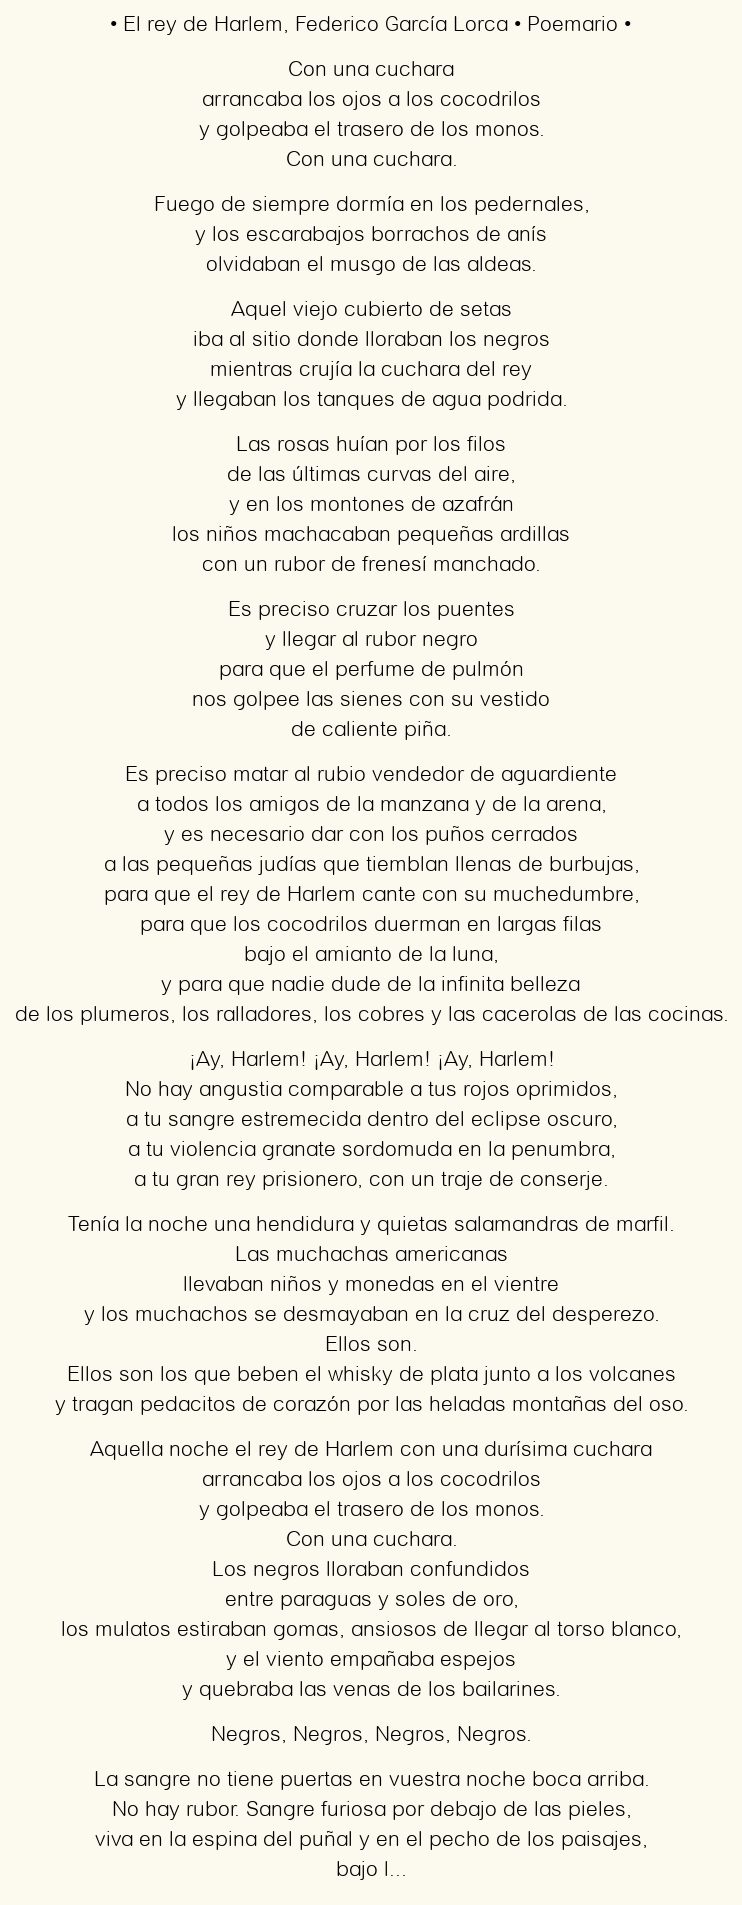 Imagen con el poema El rey de Harlem, por Federico García Lorca